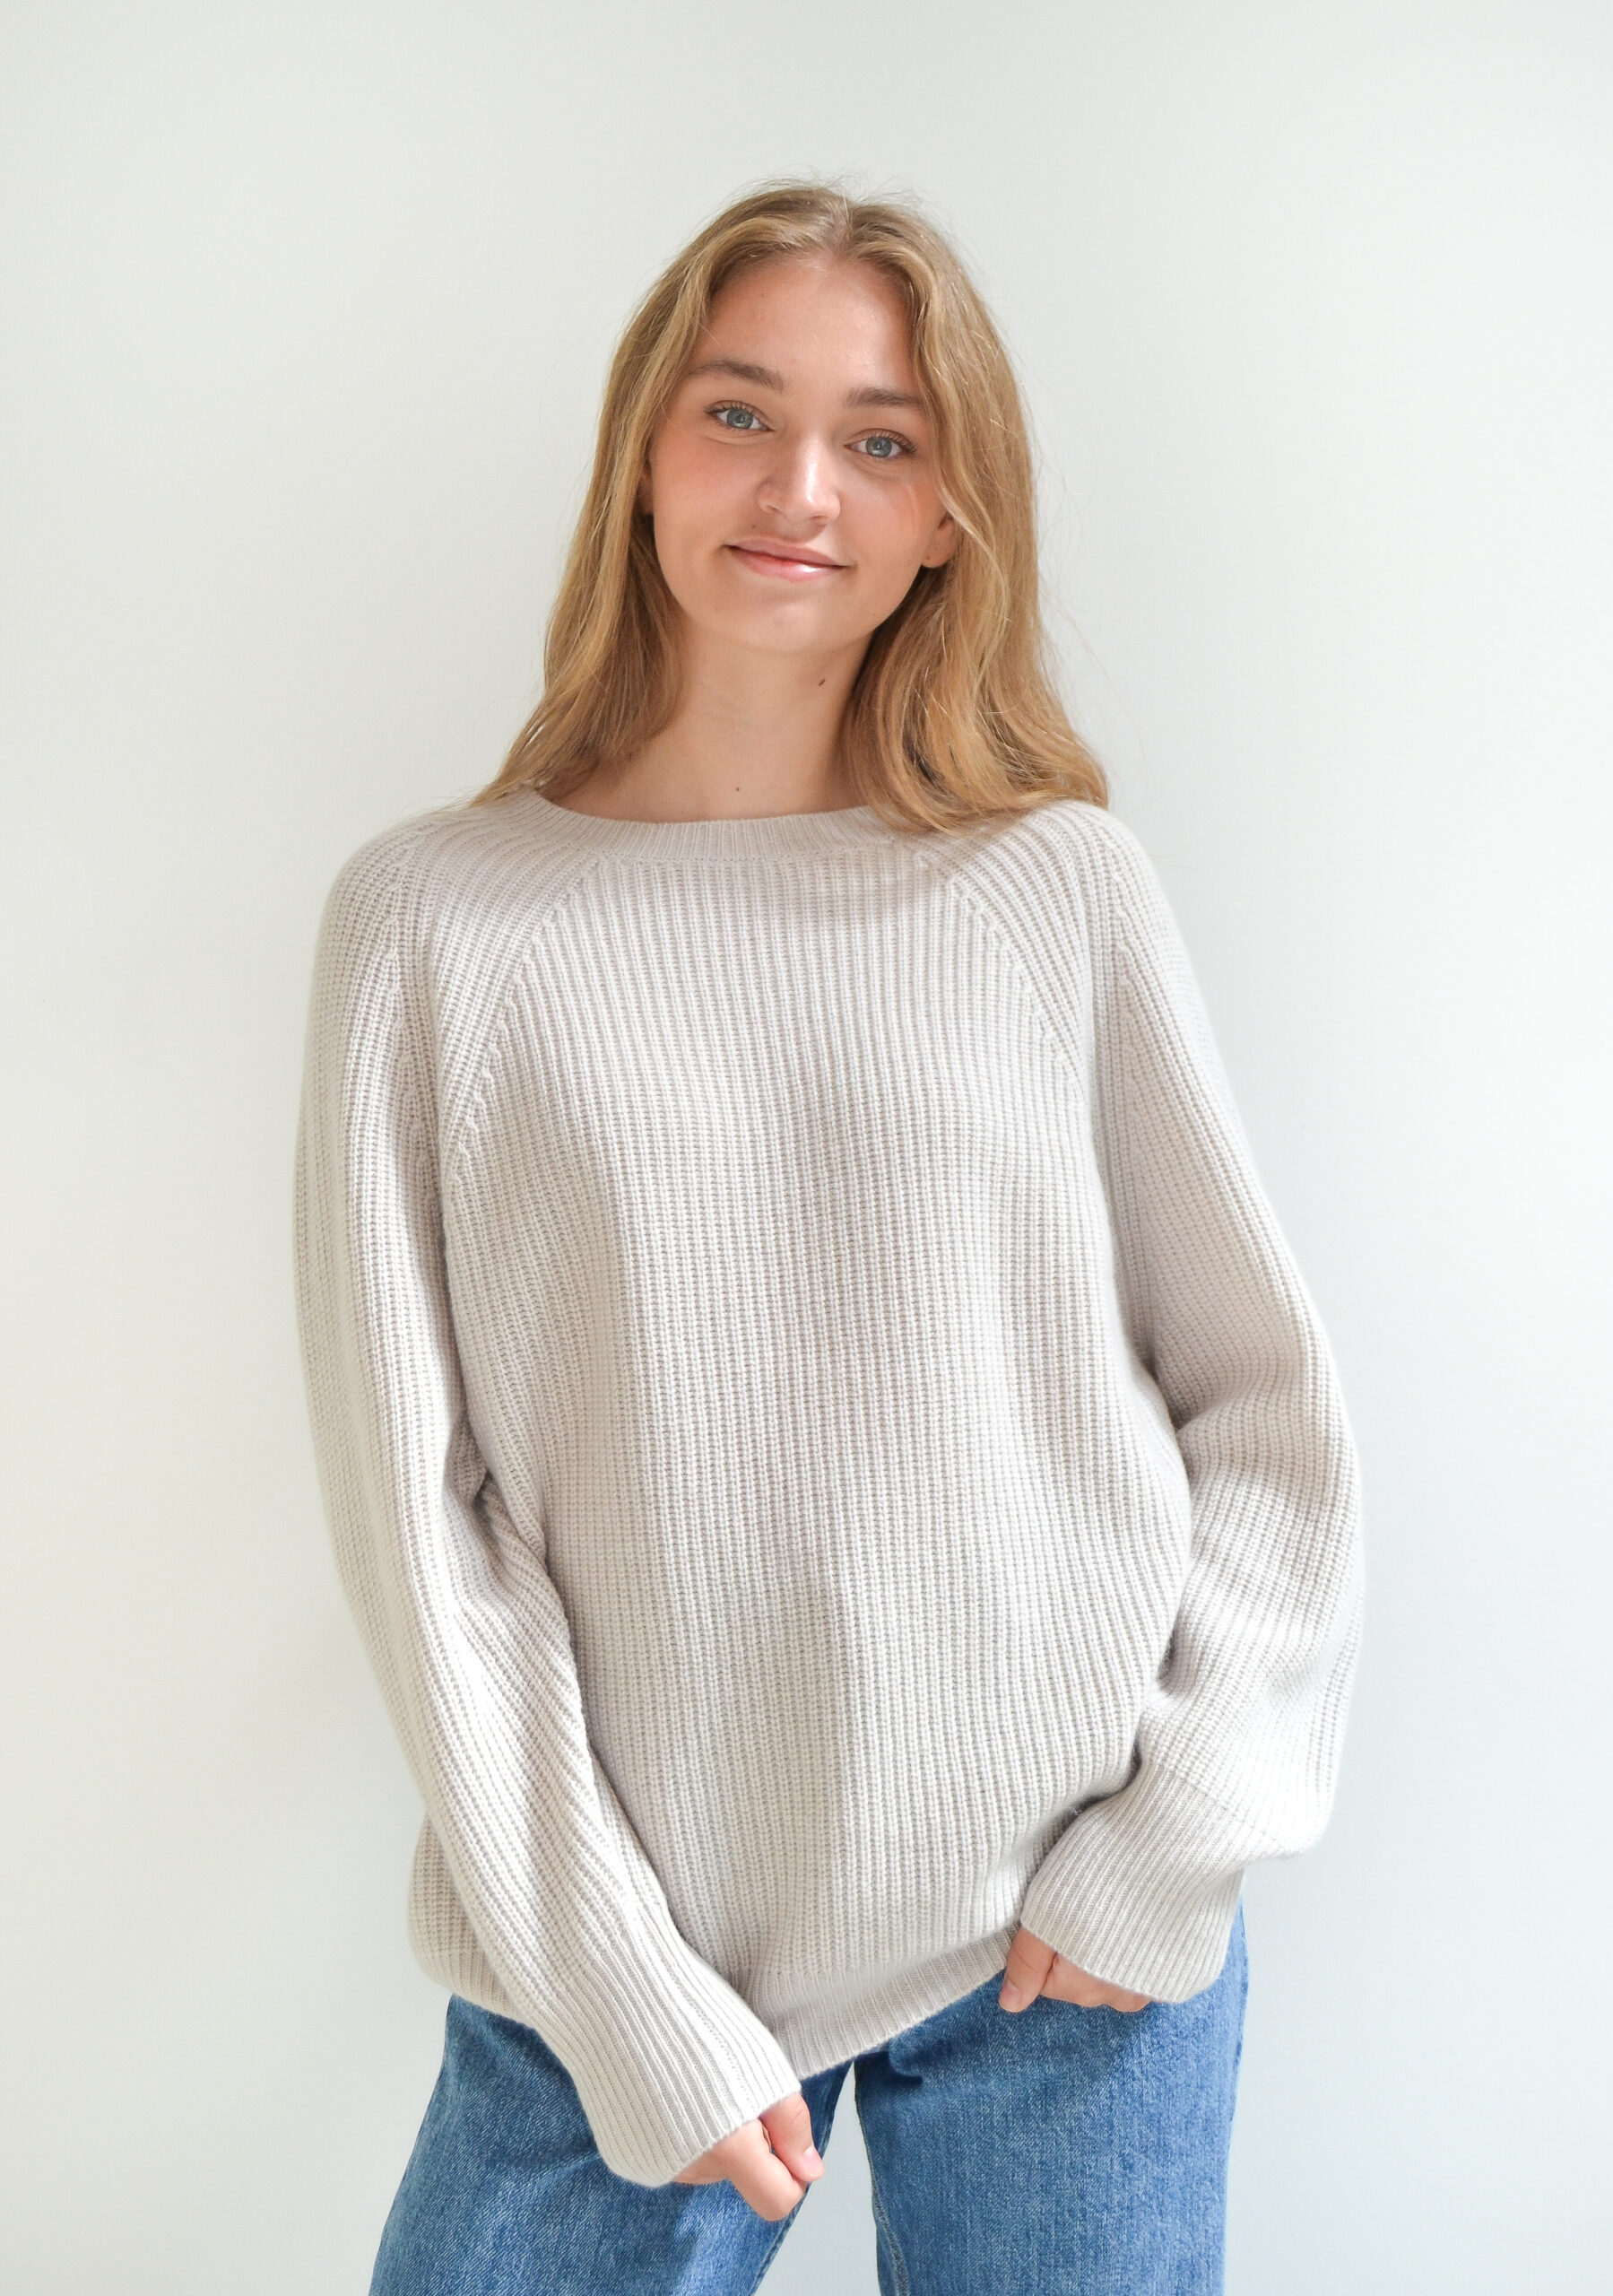 Vores oversize sweater i 100% cashmere i en flot grålig farve